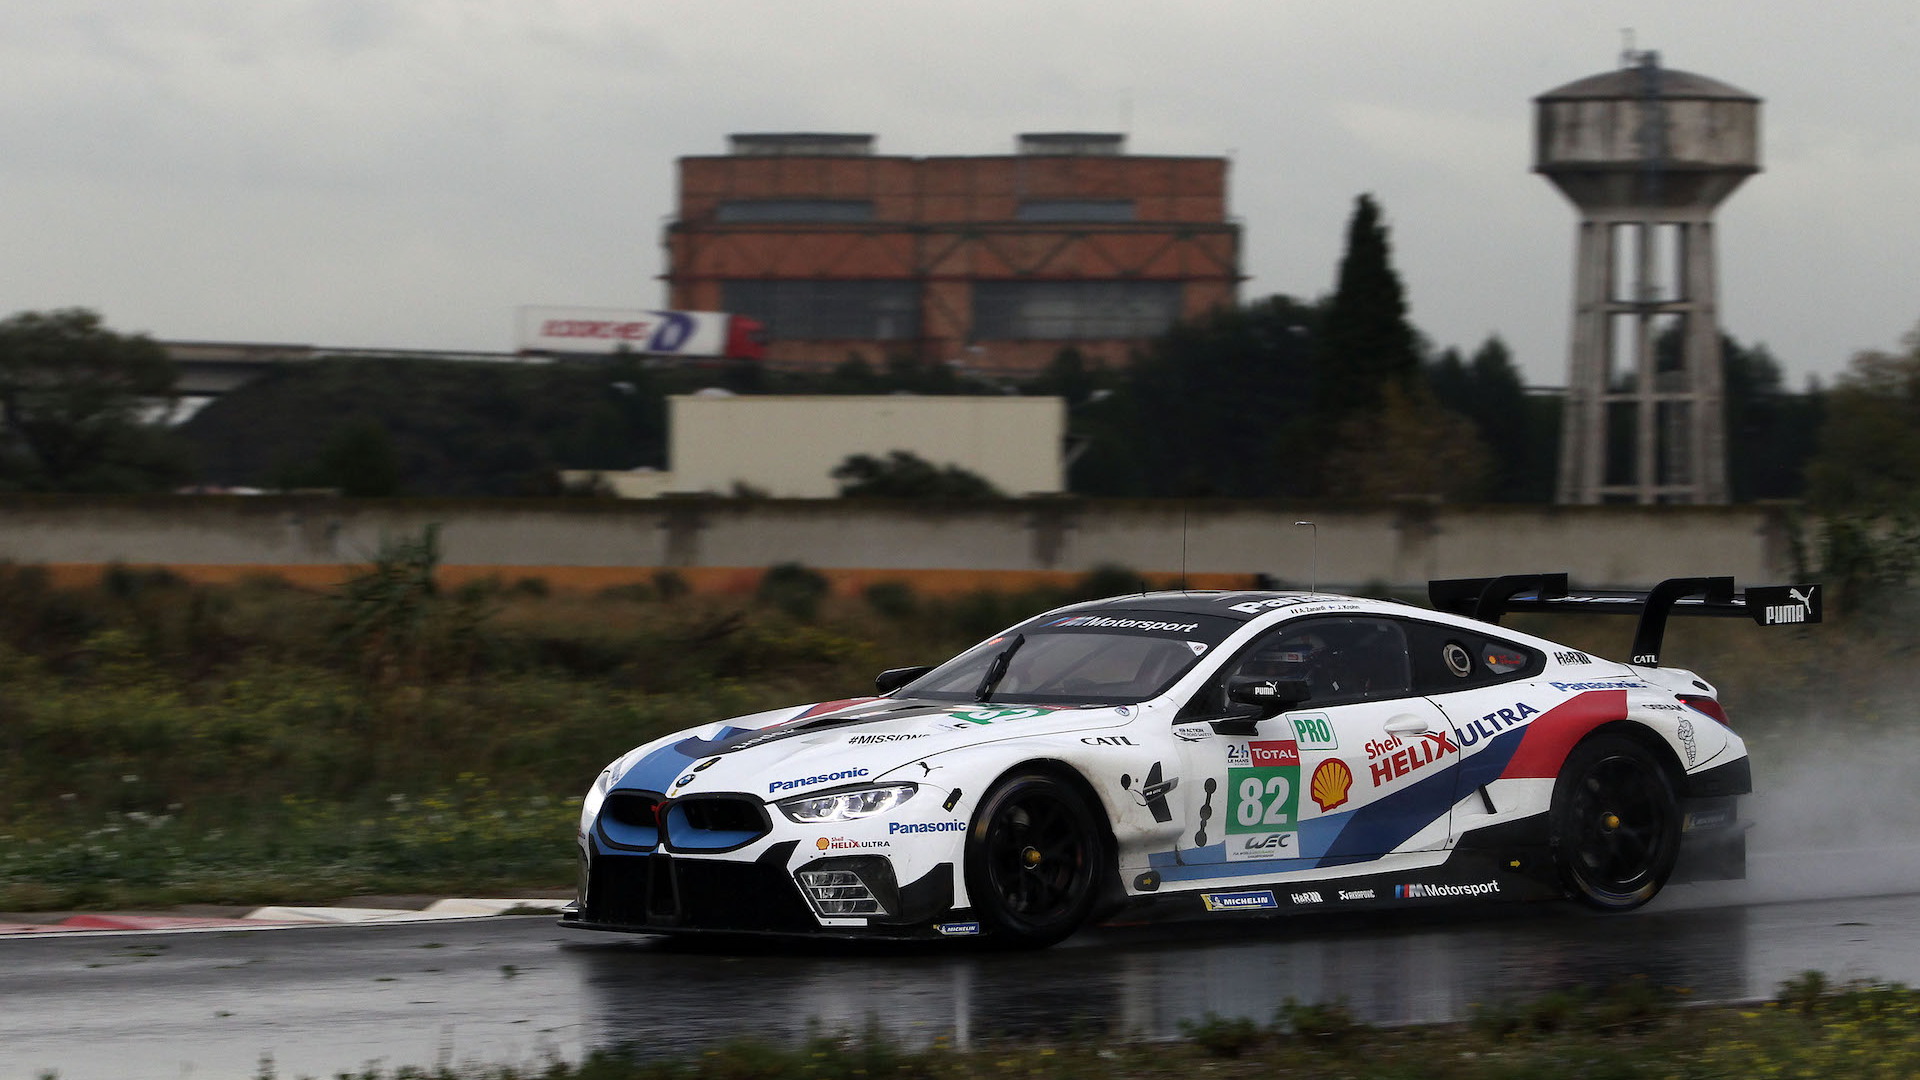 Alex Zanardi tests BMW M8 GTE racer